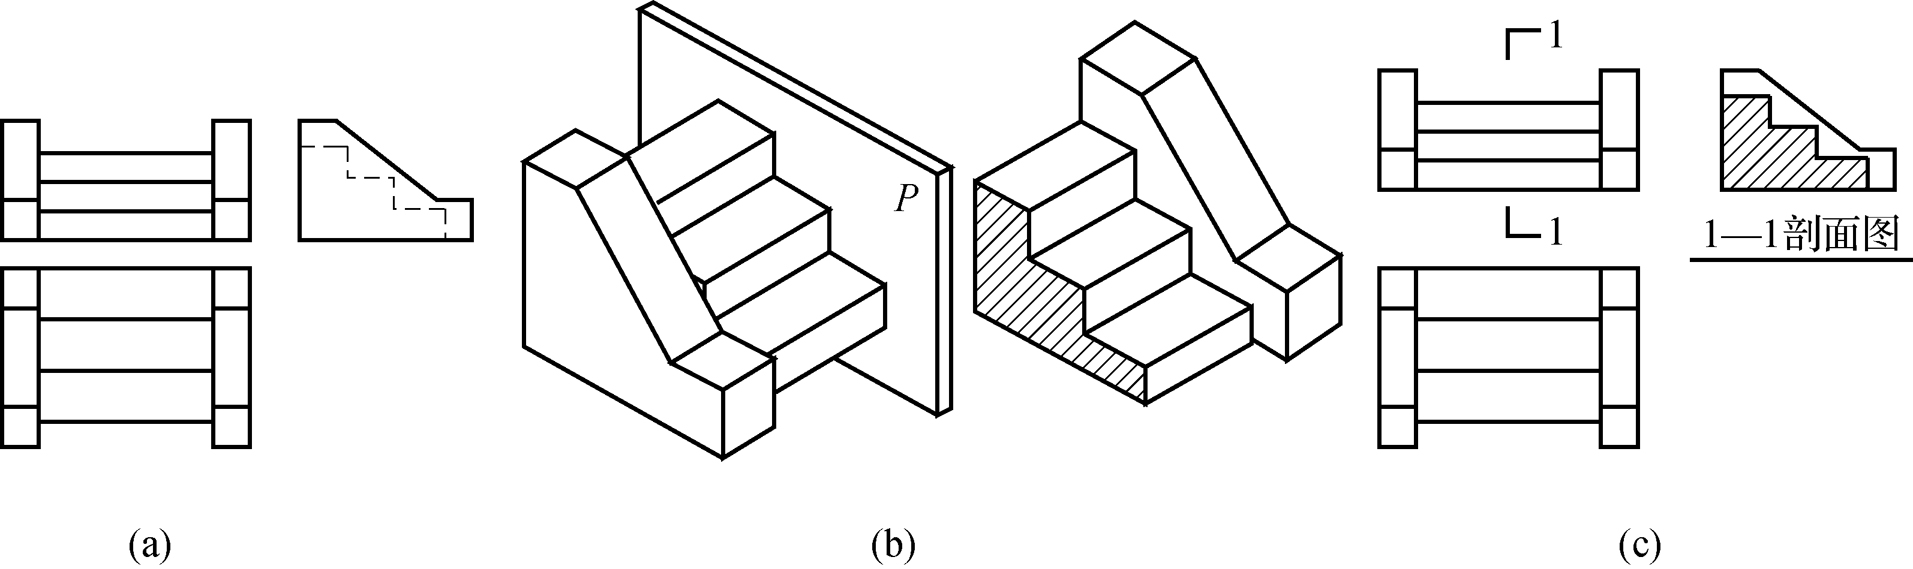 10.1建筑形体的表达方法-剖面图12（北邮）.jpg